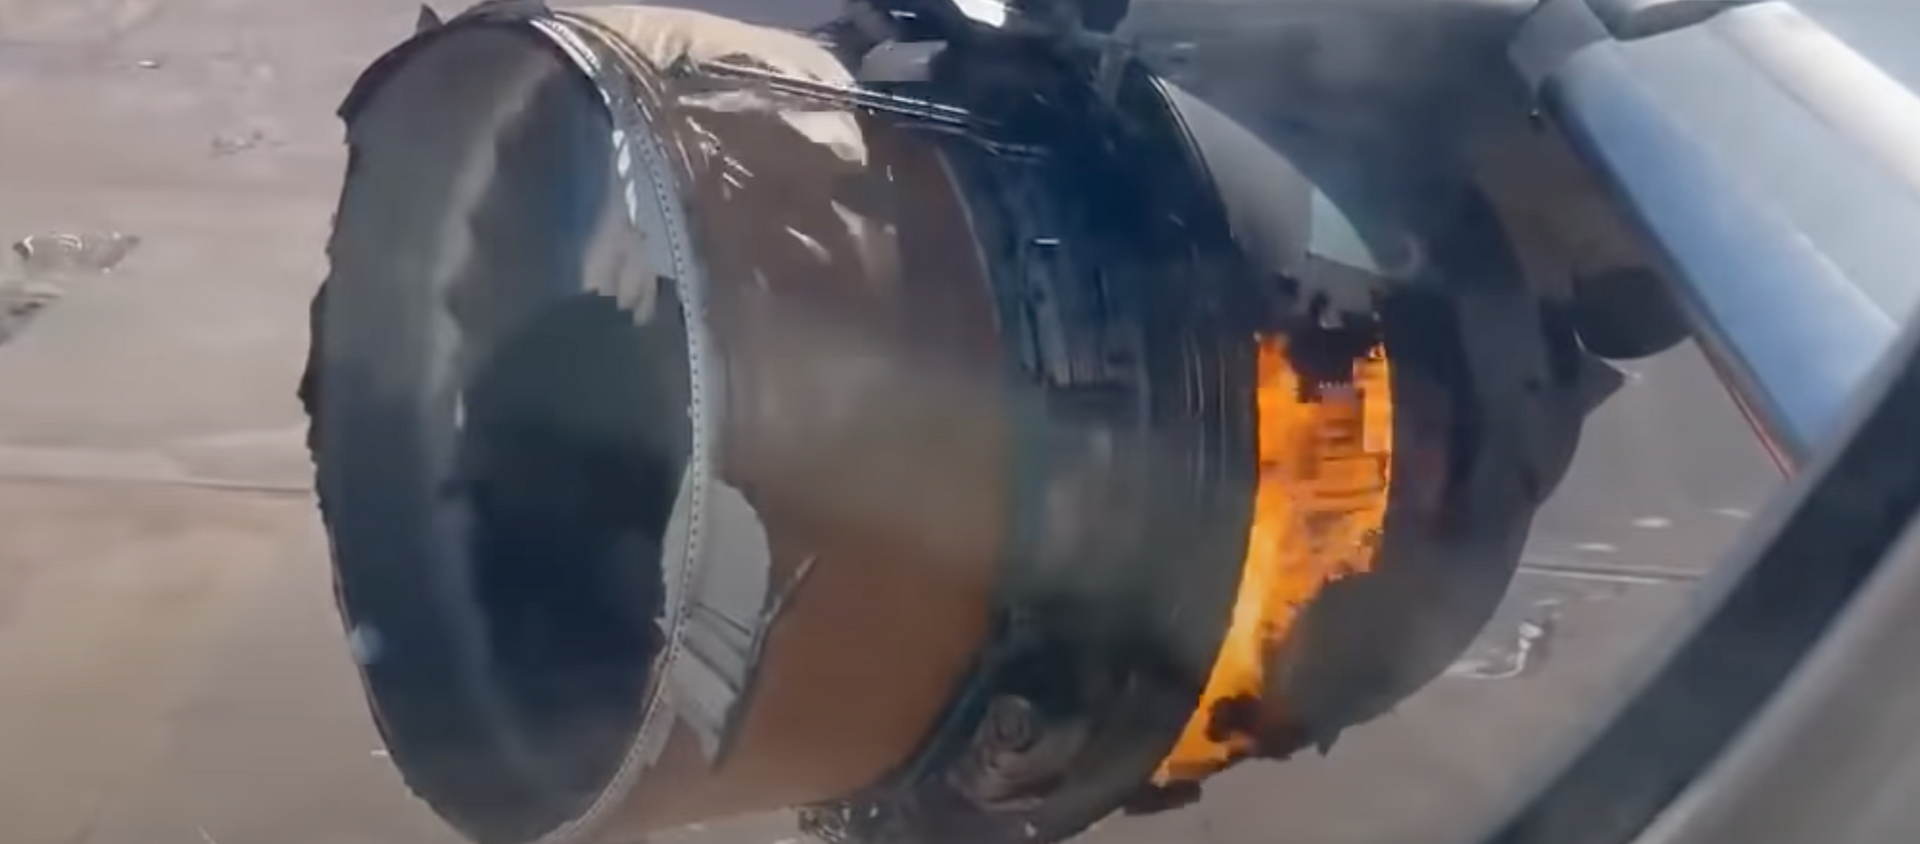 Двигатель Boeing 777 загорелся во время полета - Sputnik Таджикистан, 1920, 21.02.2021